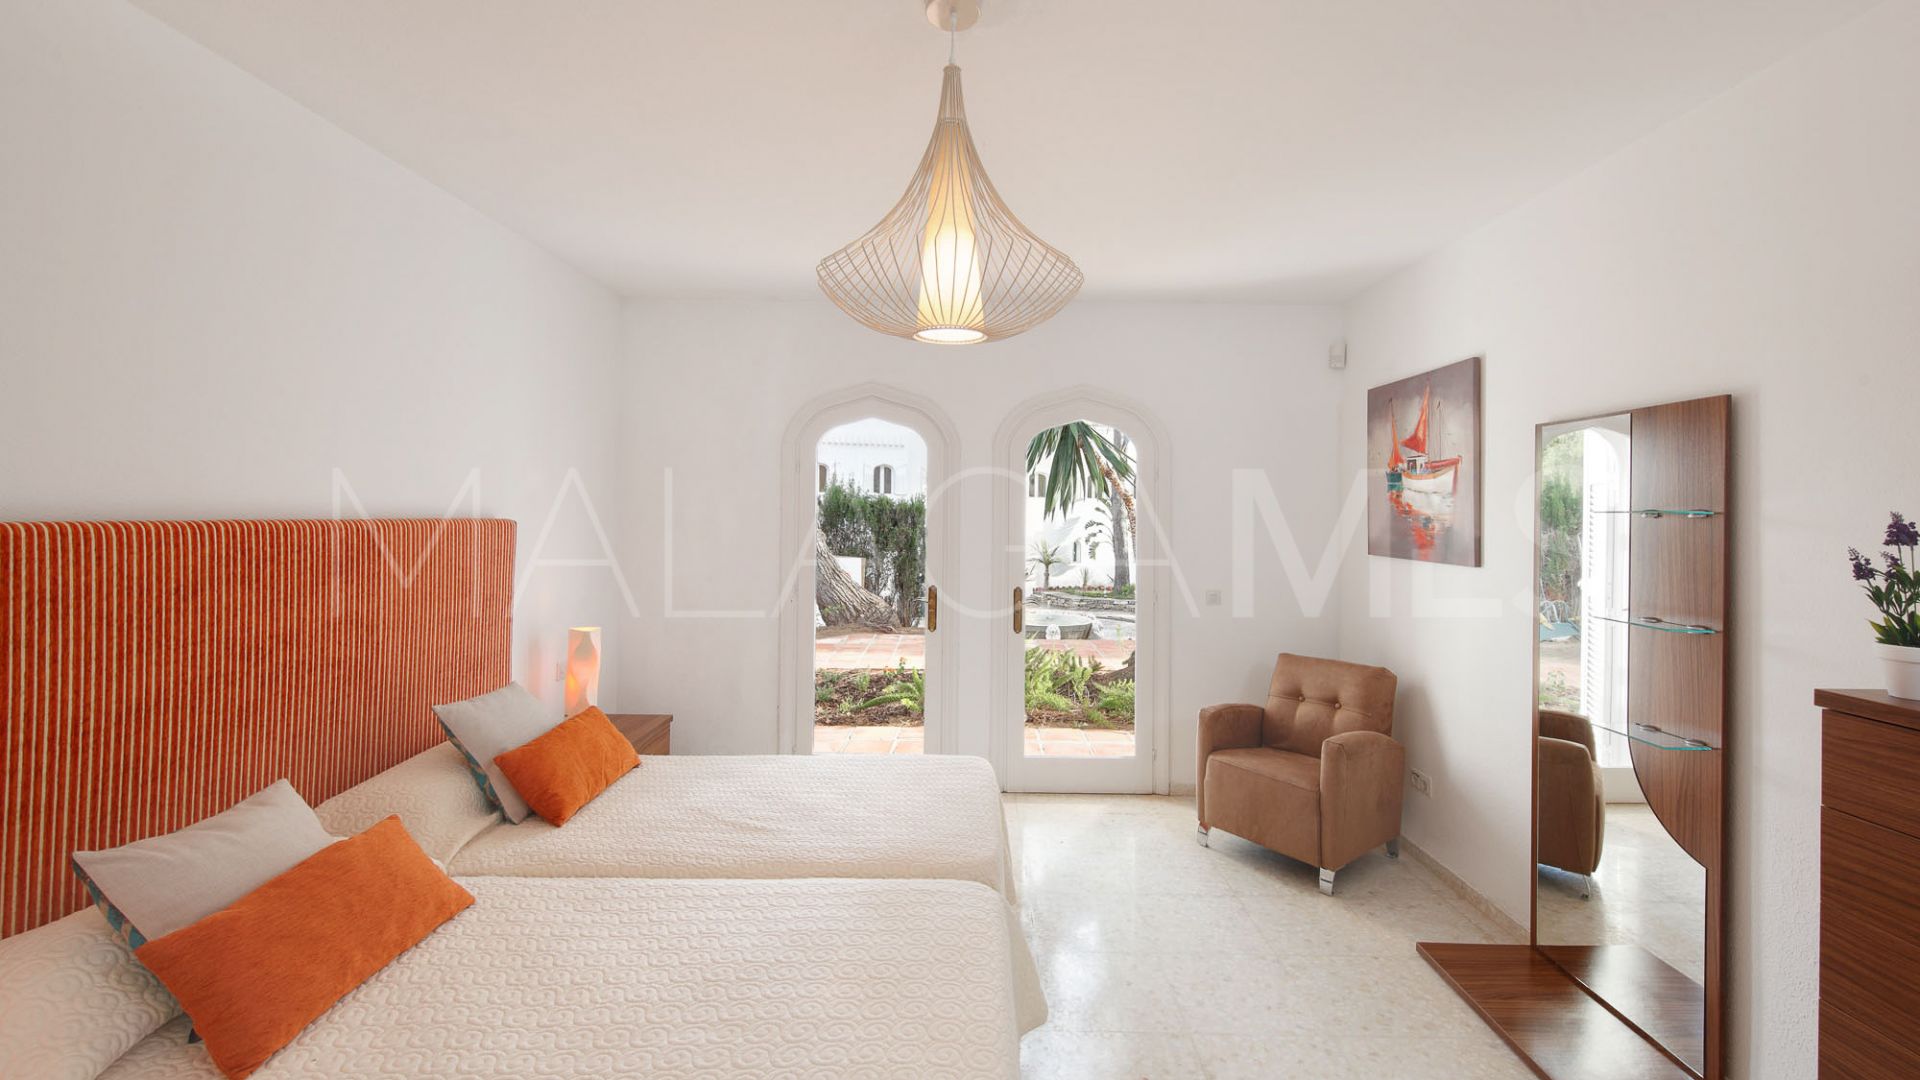 For sale Atalaya de Rio Verde 7 bedrooms villa